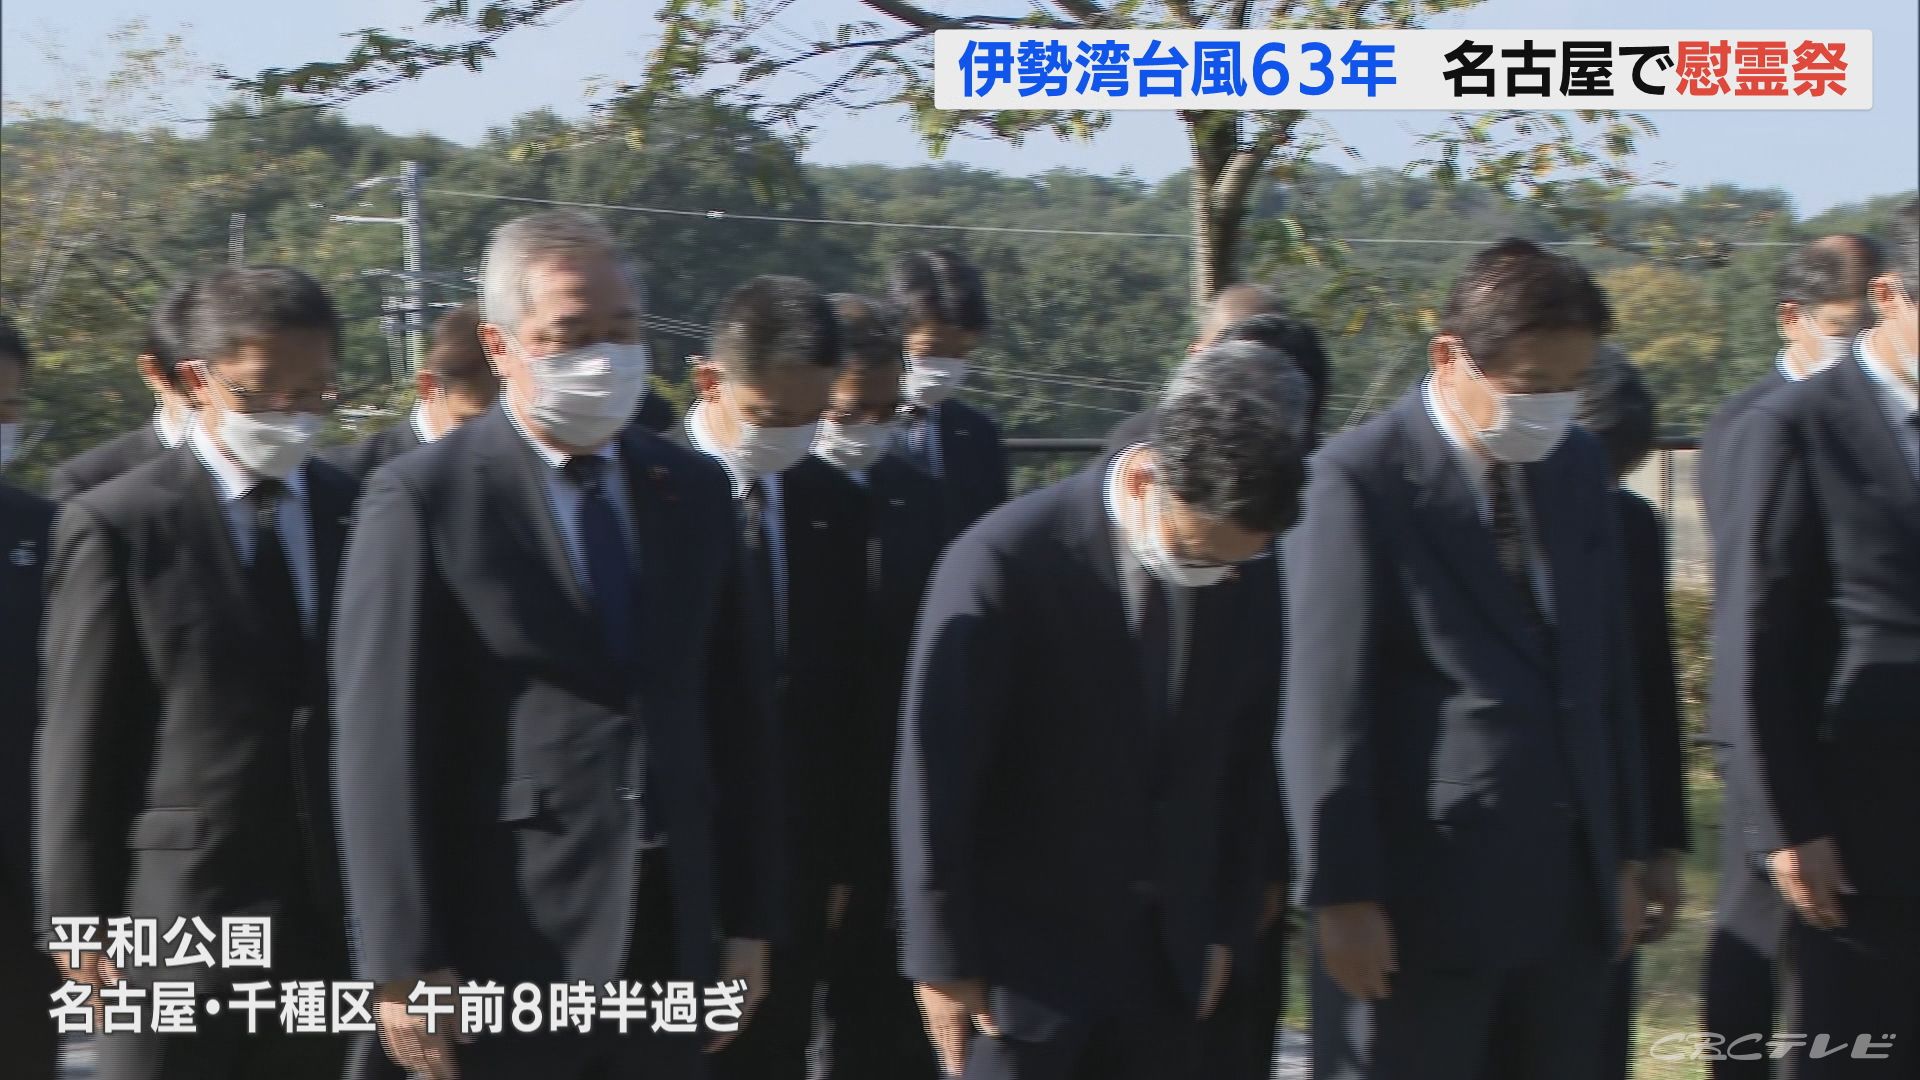 伊勢湾台風が紀伊半島に上陸してから63年　名古屋の平和公園で殉難者慰霊祭が開かれる